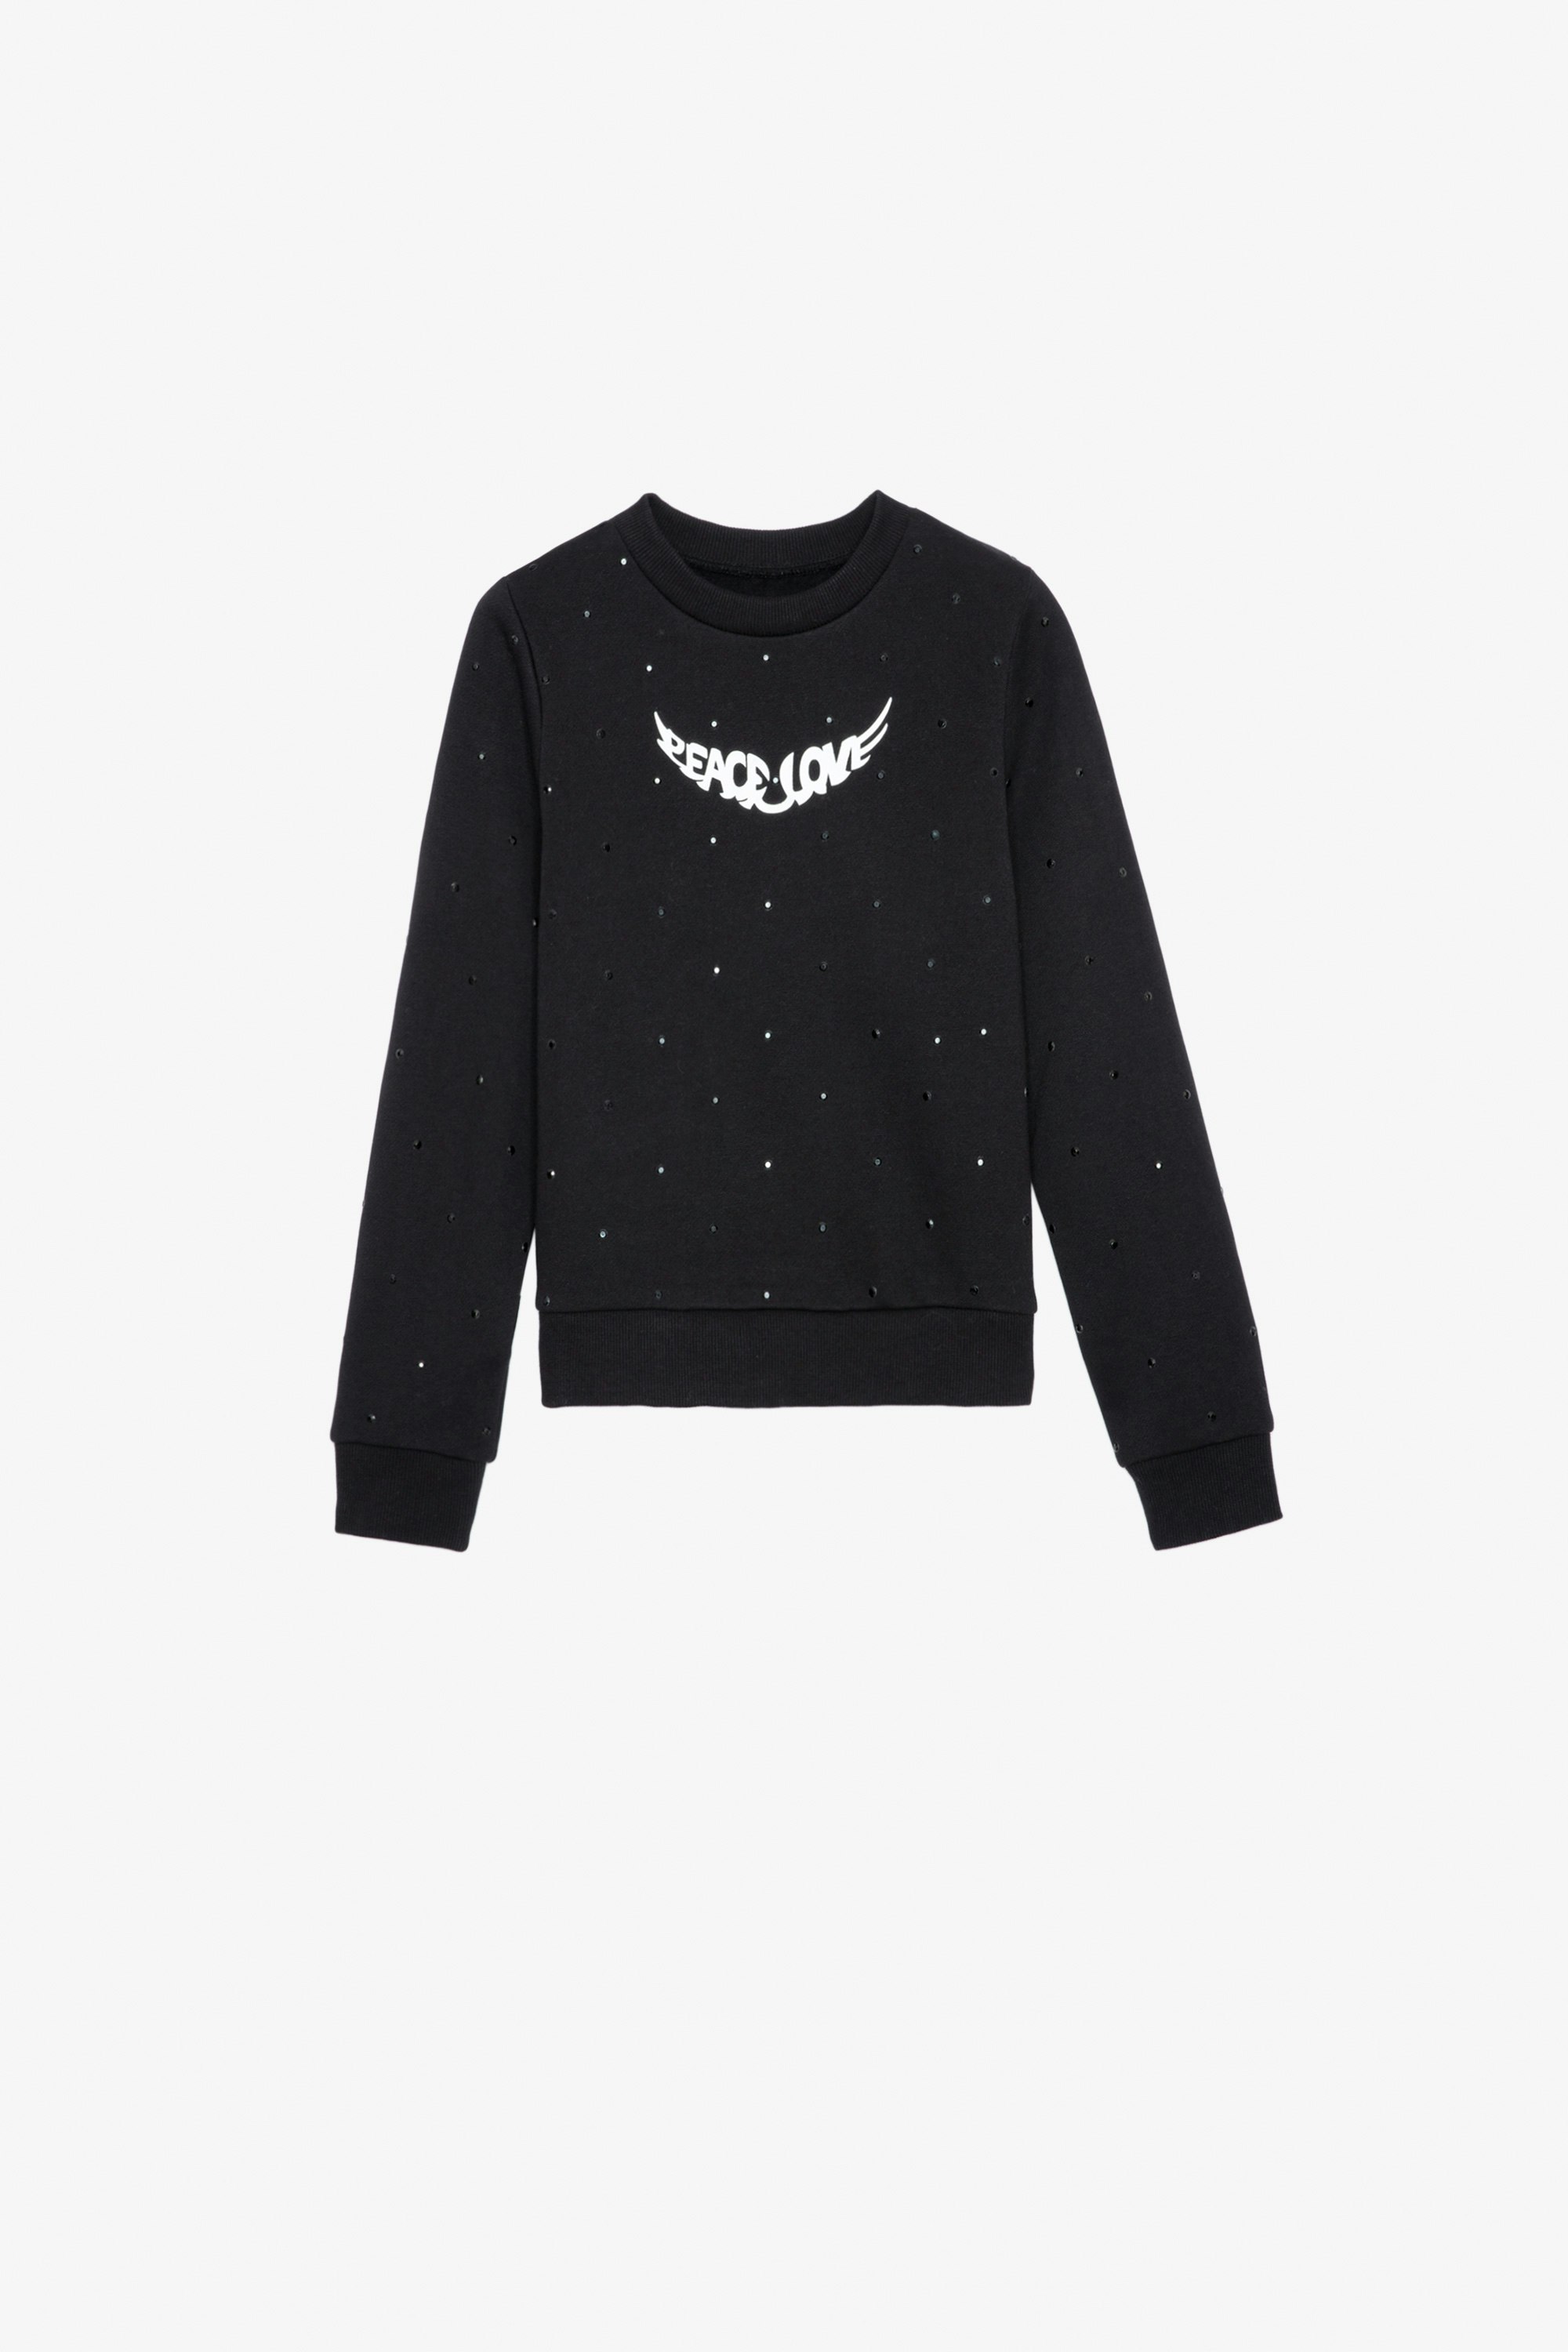 Upper Girls’ Sweatshirt Girls’ black cotton fleece sweatshirt with diamanté and wings motif.